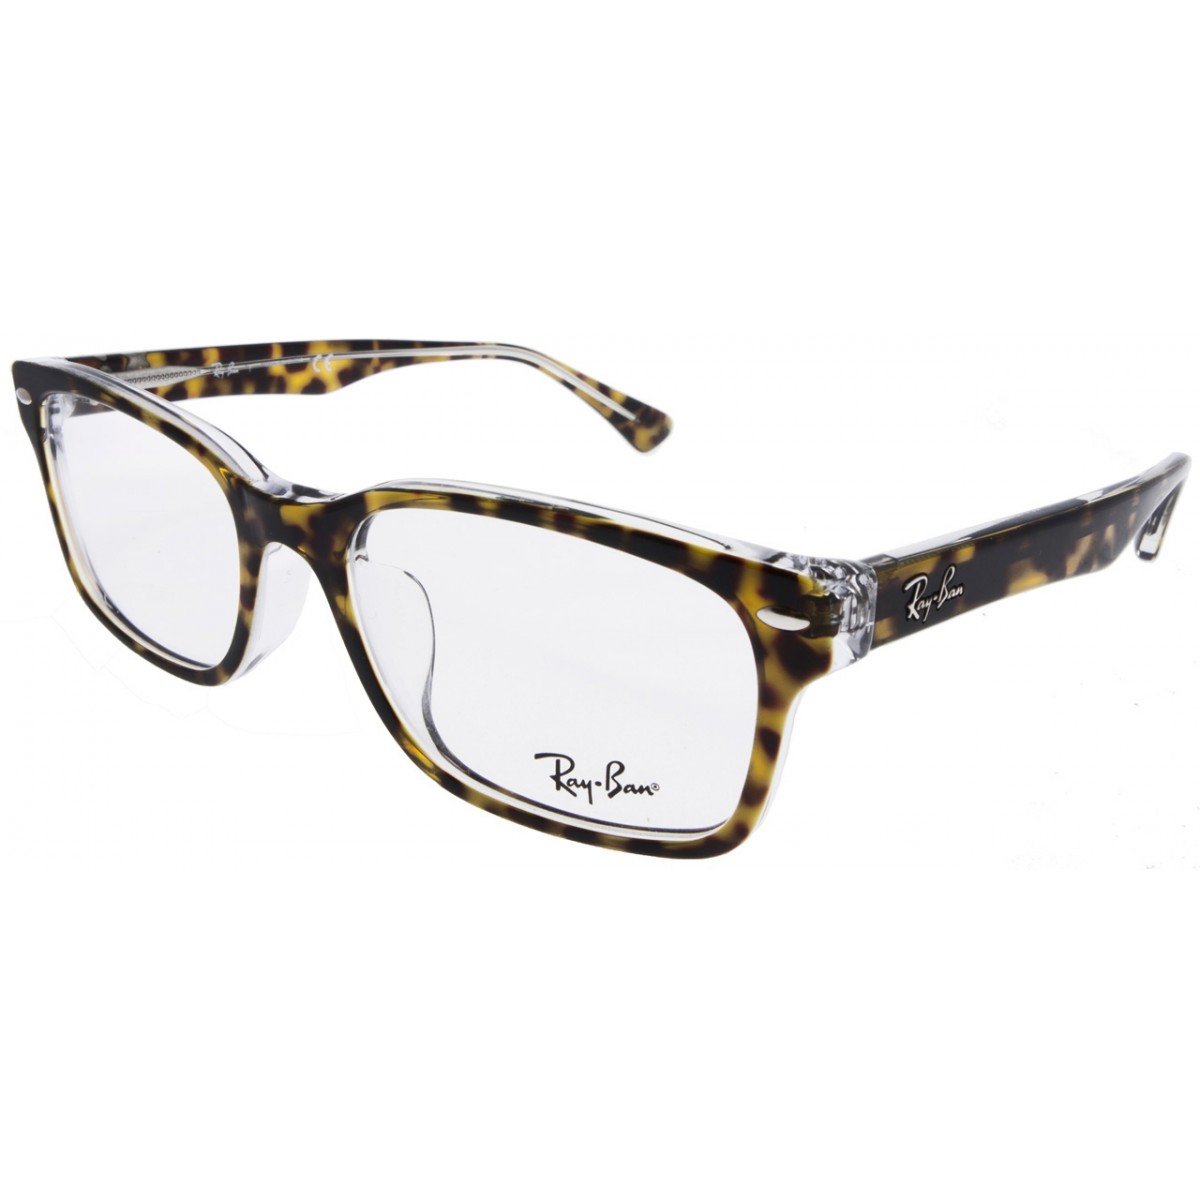 Order Trifocal Eyeglasses Online | David Simchi-Levi
